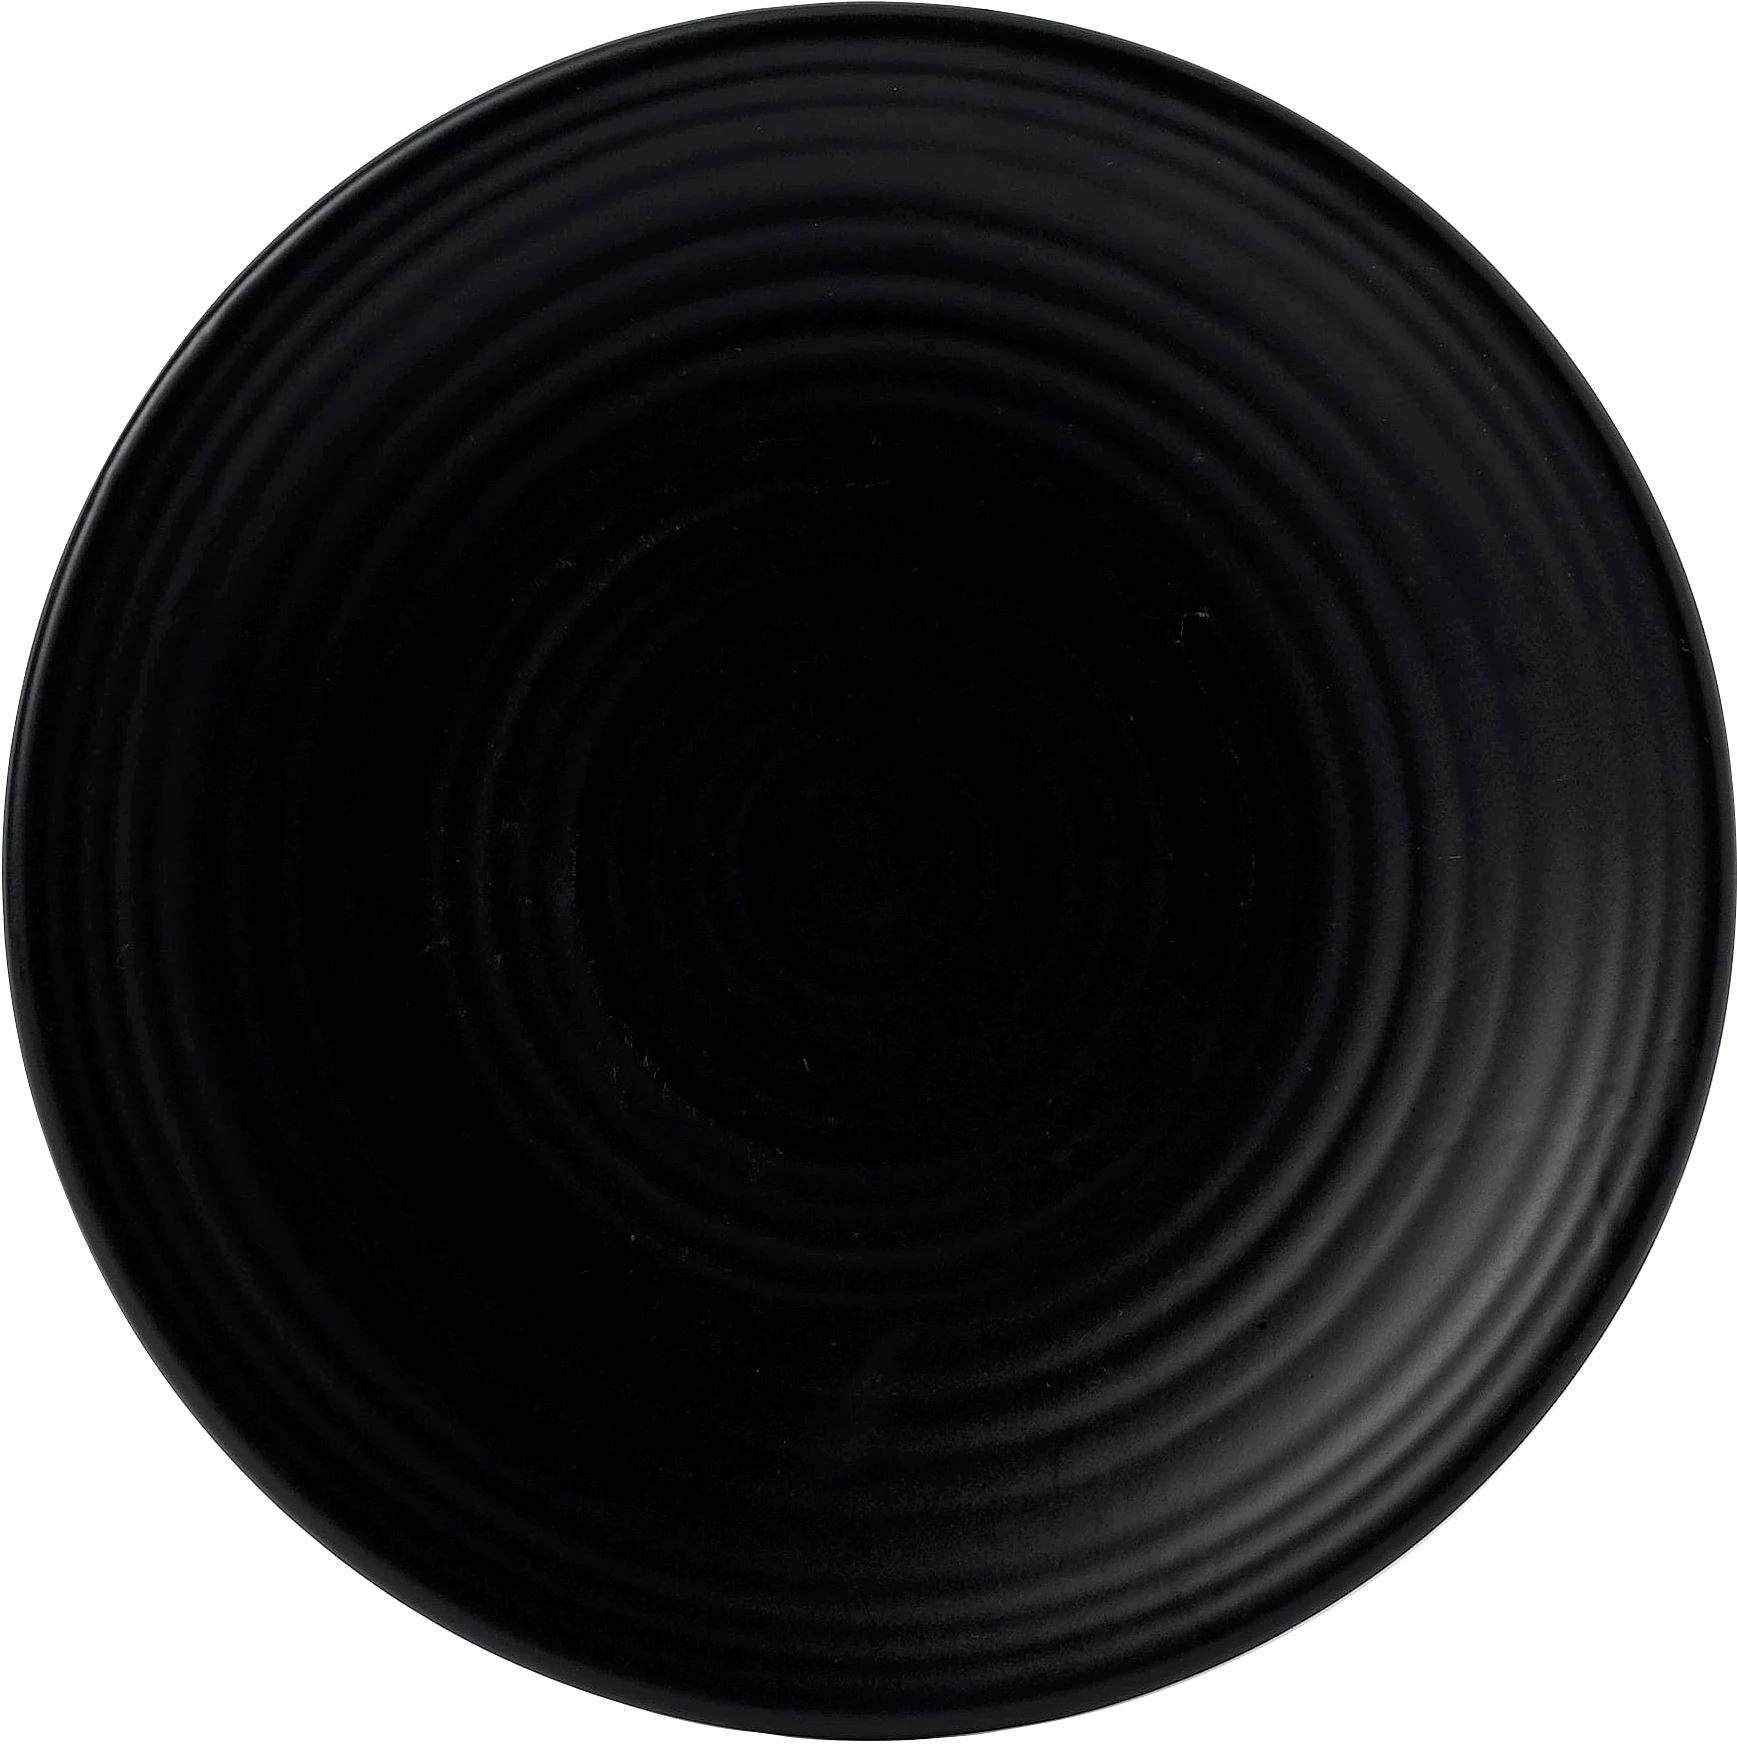 Dudson Evo Jet flad tallerken, sort, ø20,5 cm